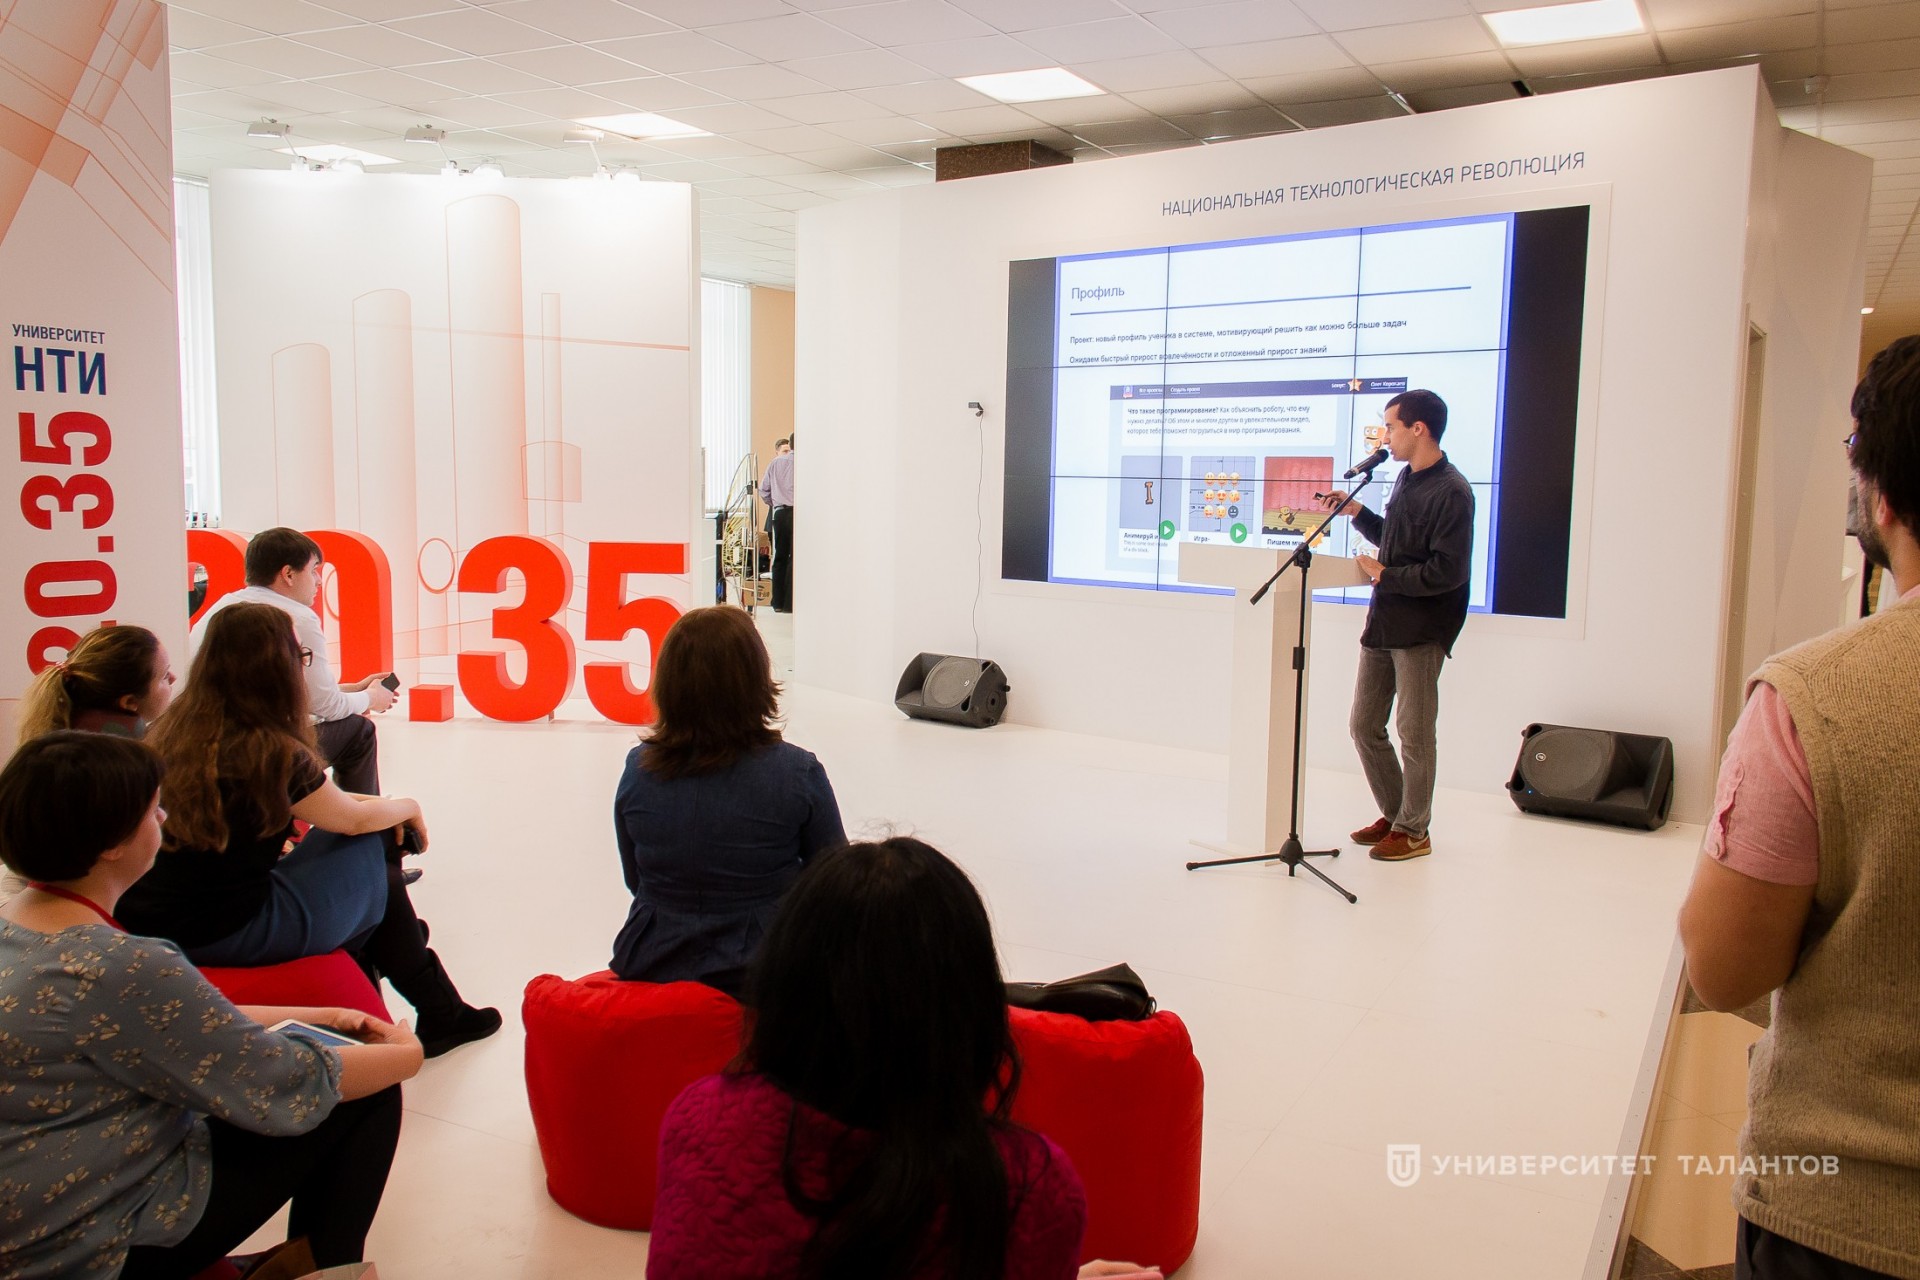 Татарстанские наставники узнали, какие технологические изменения ждут образование, экономику и общество к 2035 году